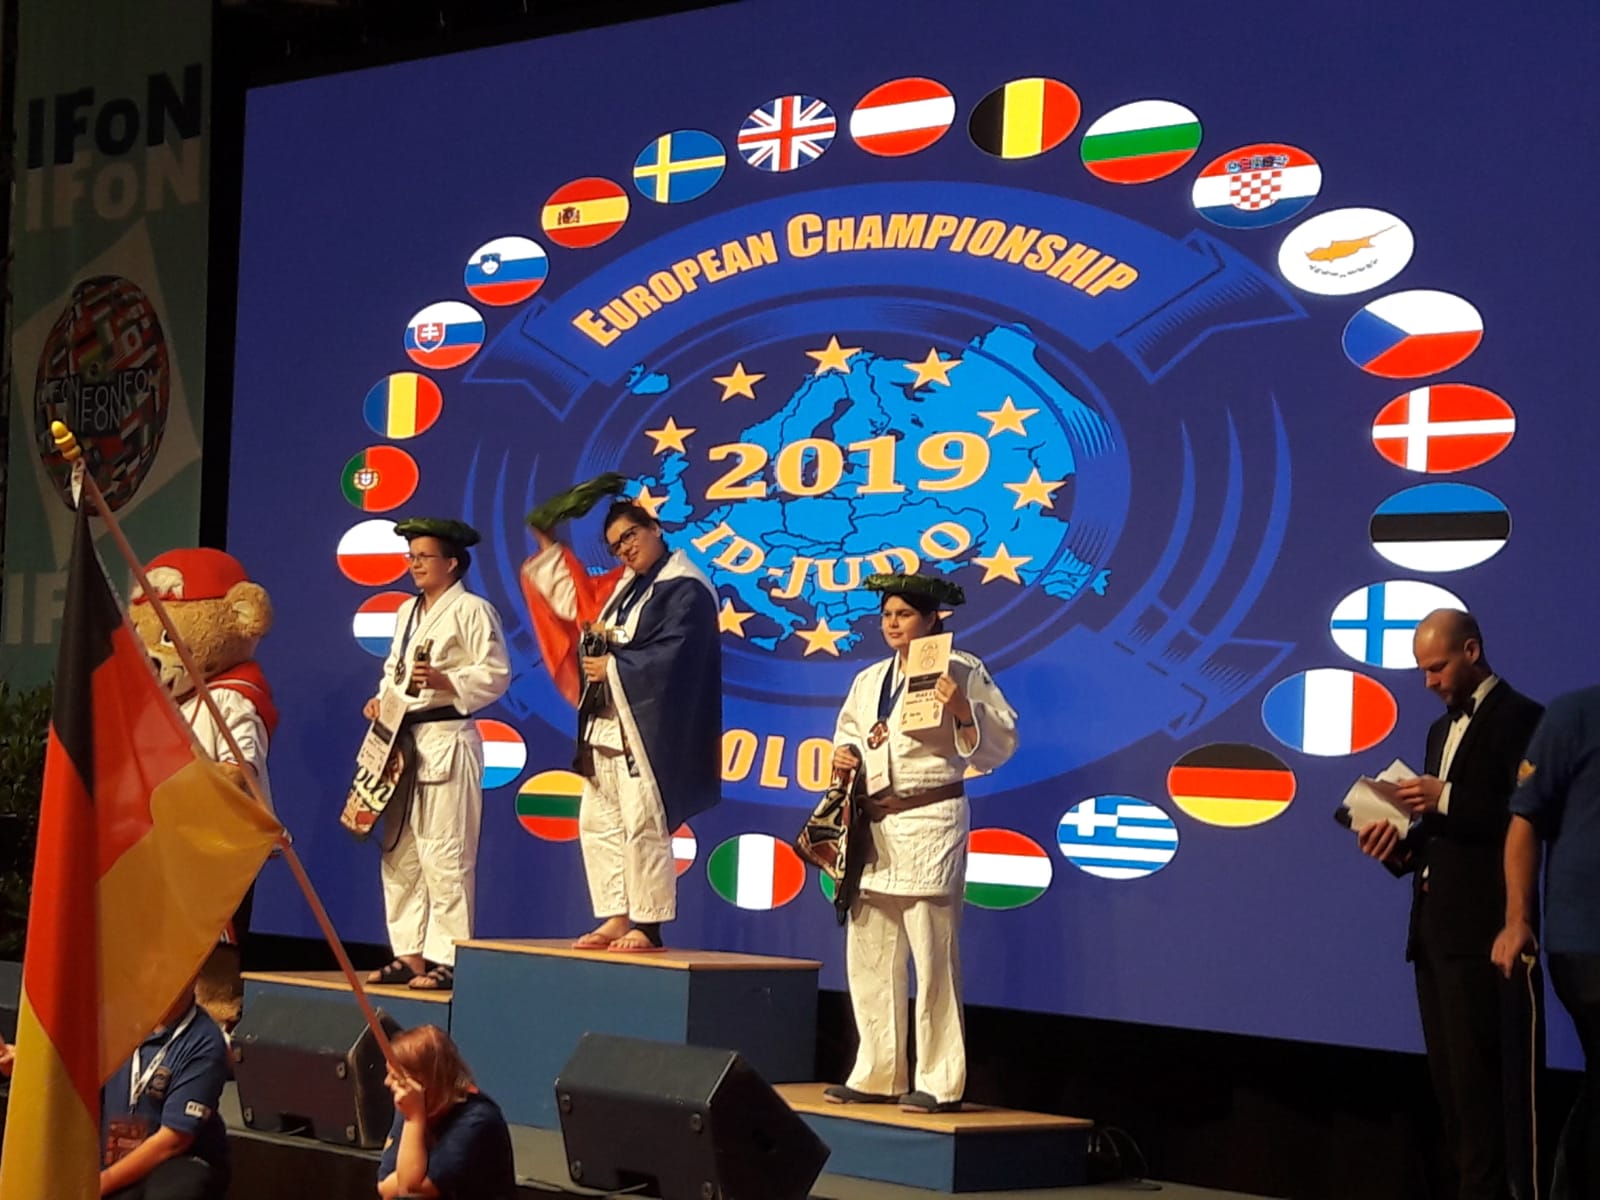 Lors des championnats d'Europe de judo en Allemagne, Bursa Ersoy a reçu la médaille d'or